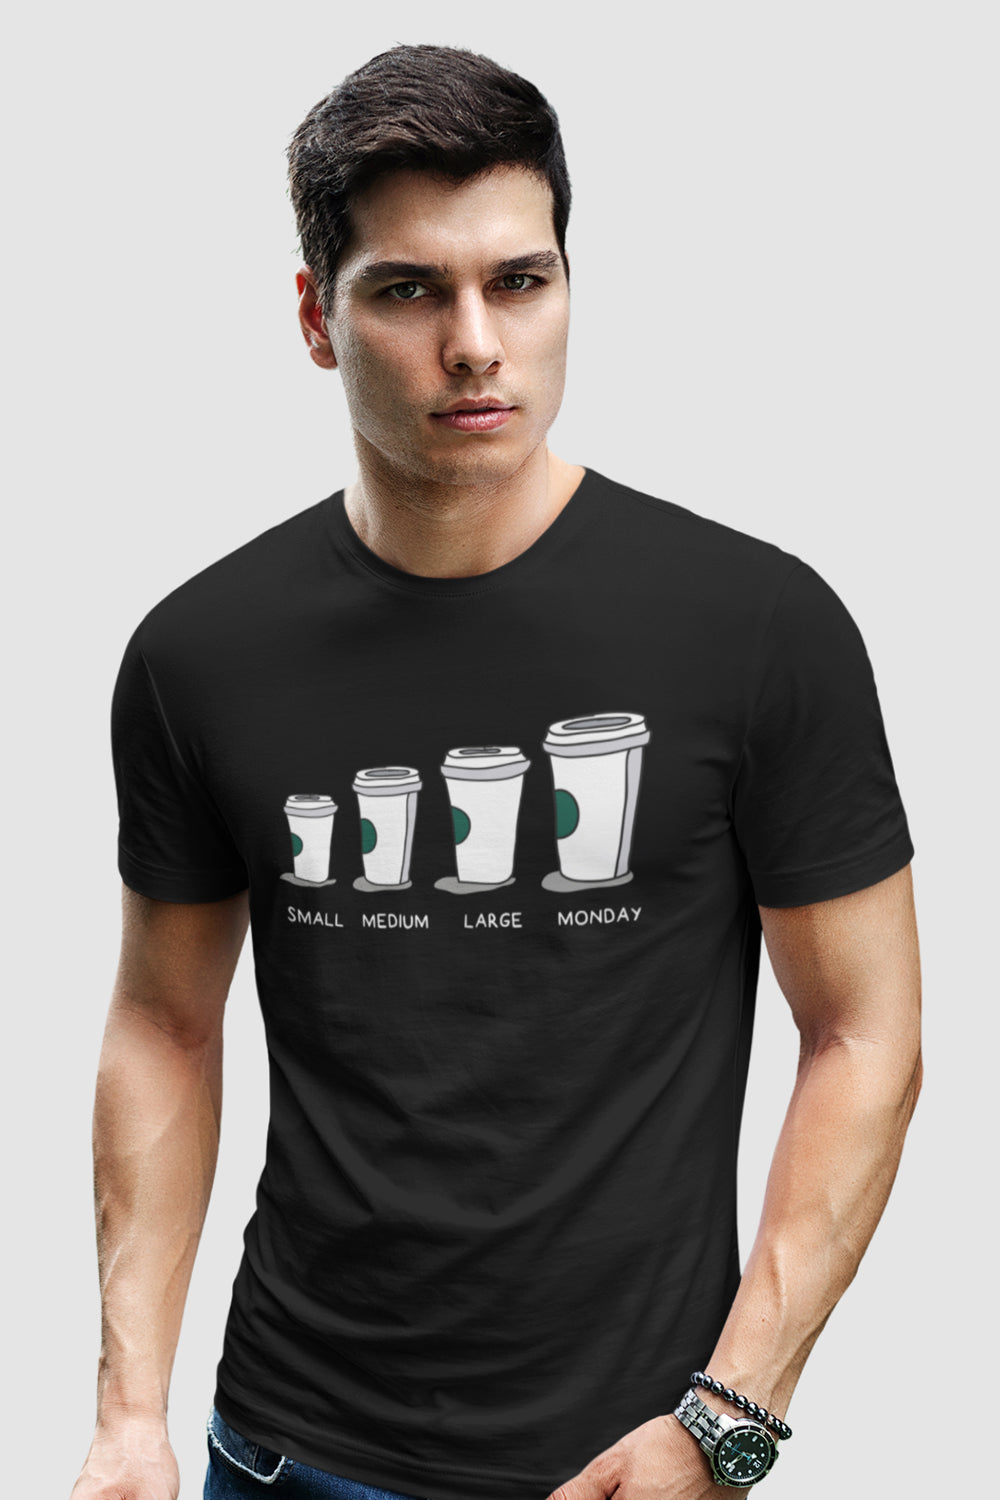 Small to Monday Coffee Graphic Printed Black Tshirt